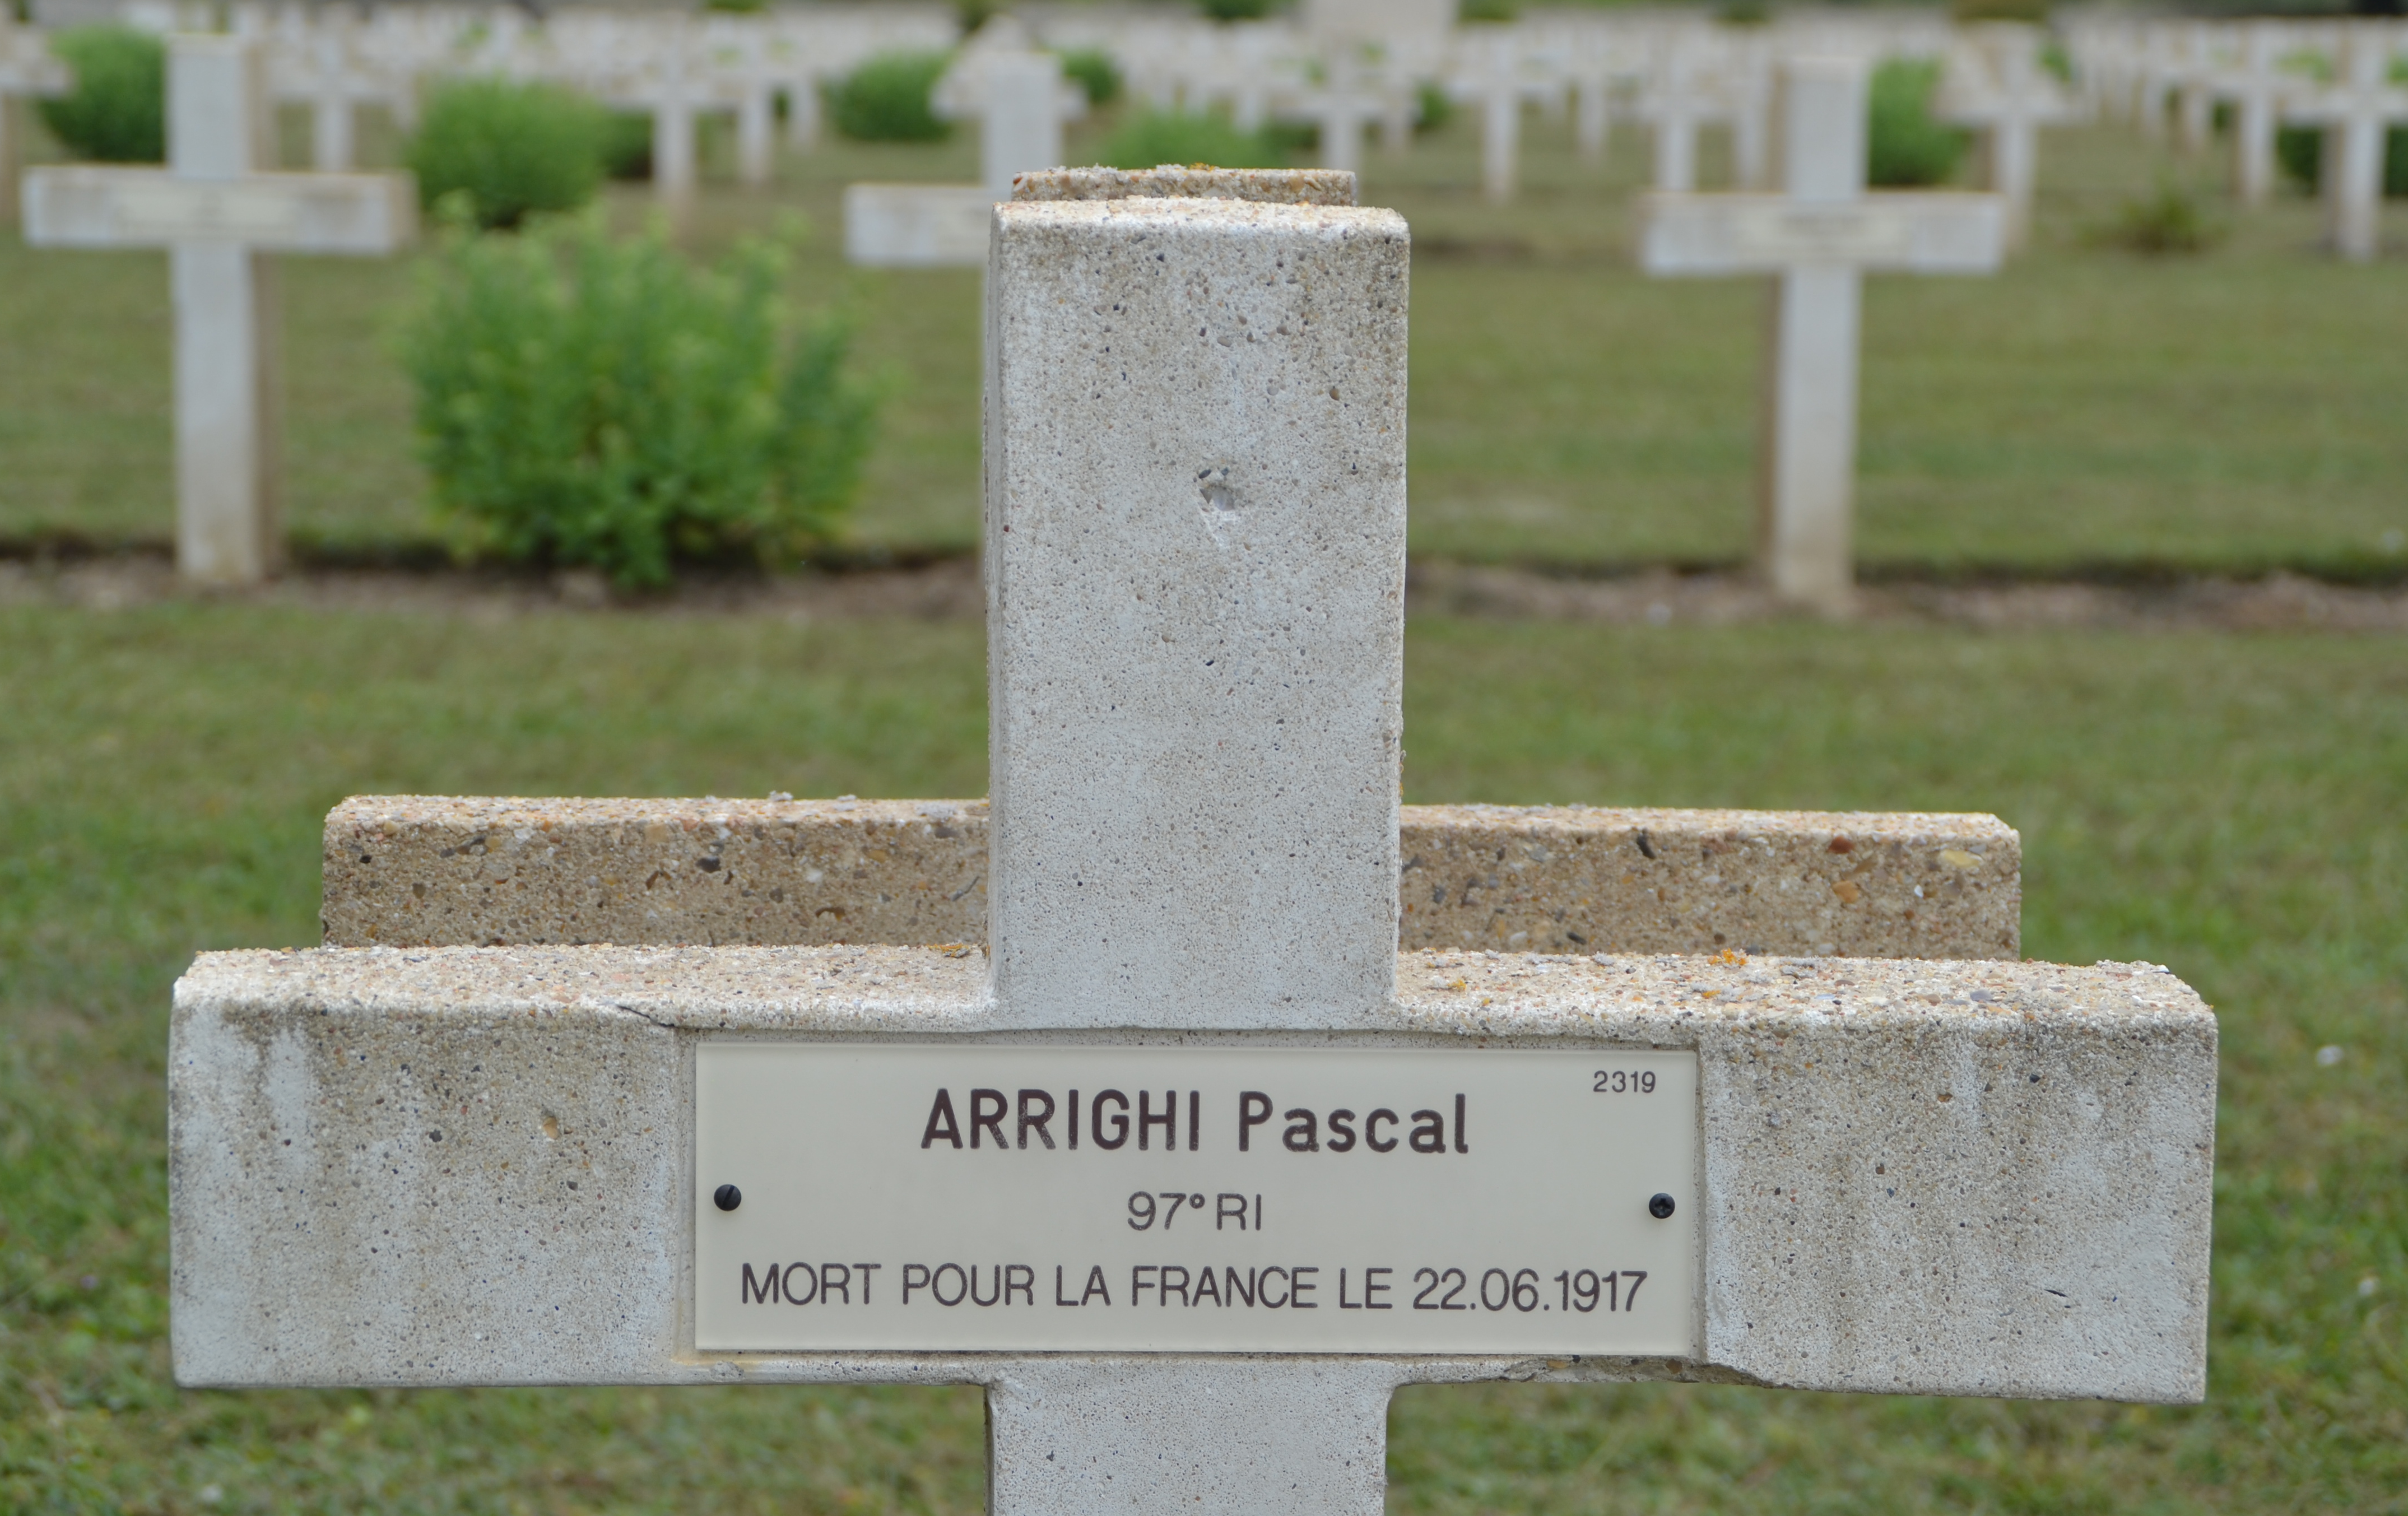 Arrighi Pascal sépulture à Soupir 1 (Aisne)